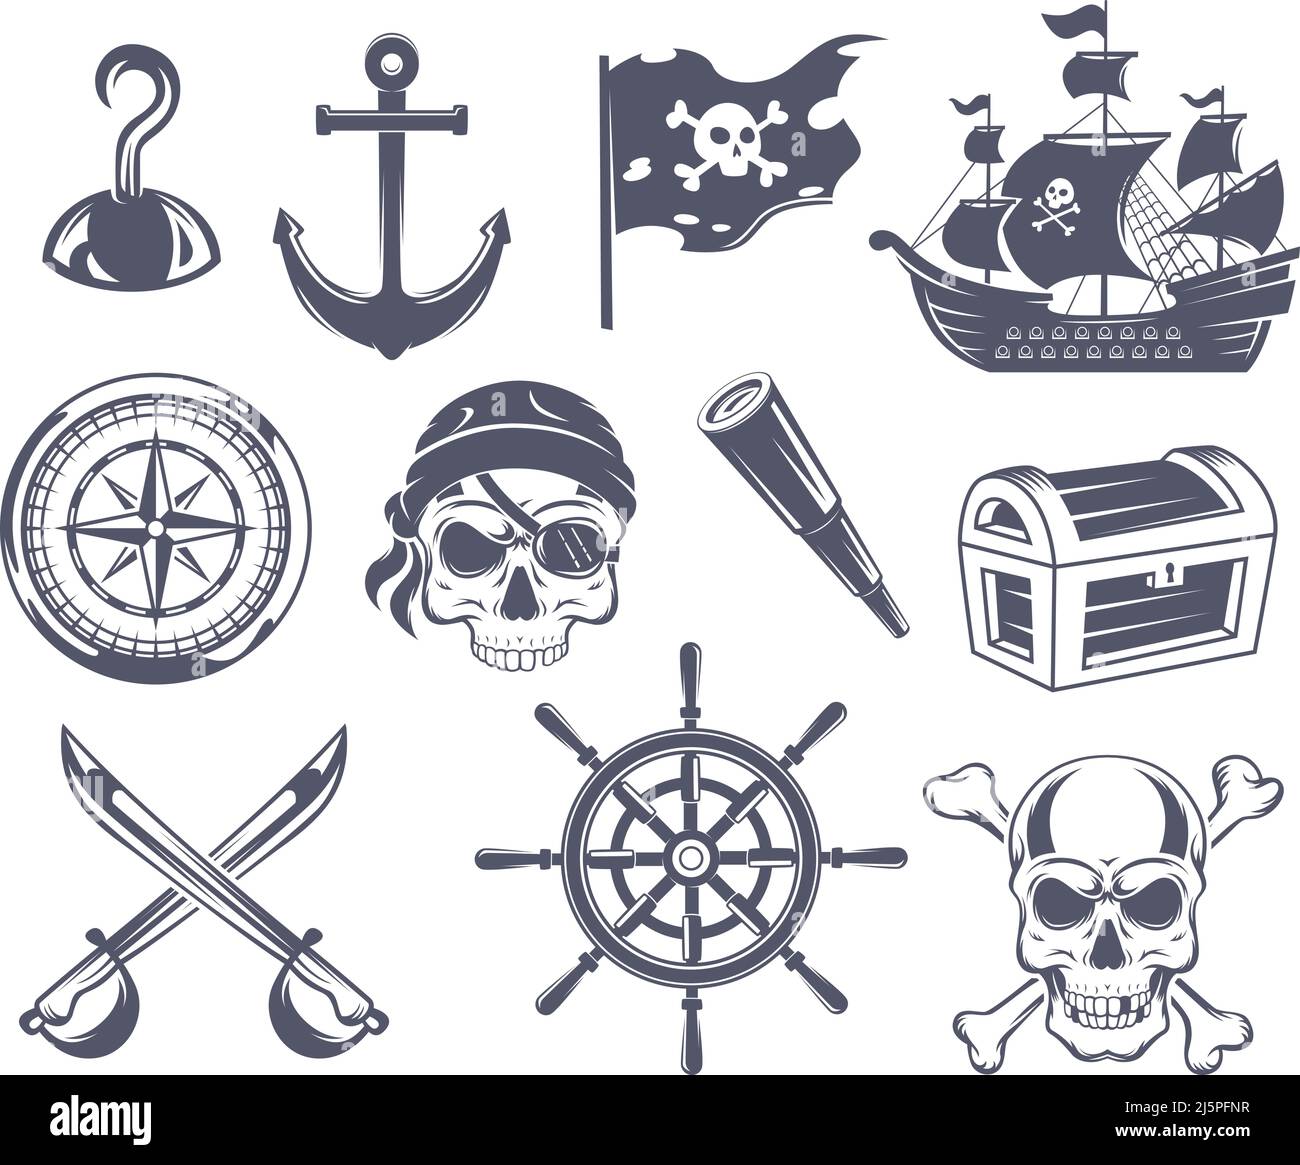 Badges de pirate. Emblèmes marins de tatouage pour marins crâne et os dessin ancre vieux navire en bois vecteur exact des symboles de pirate Illustration de Vecteur